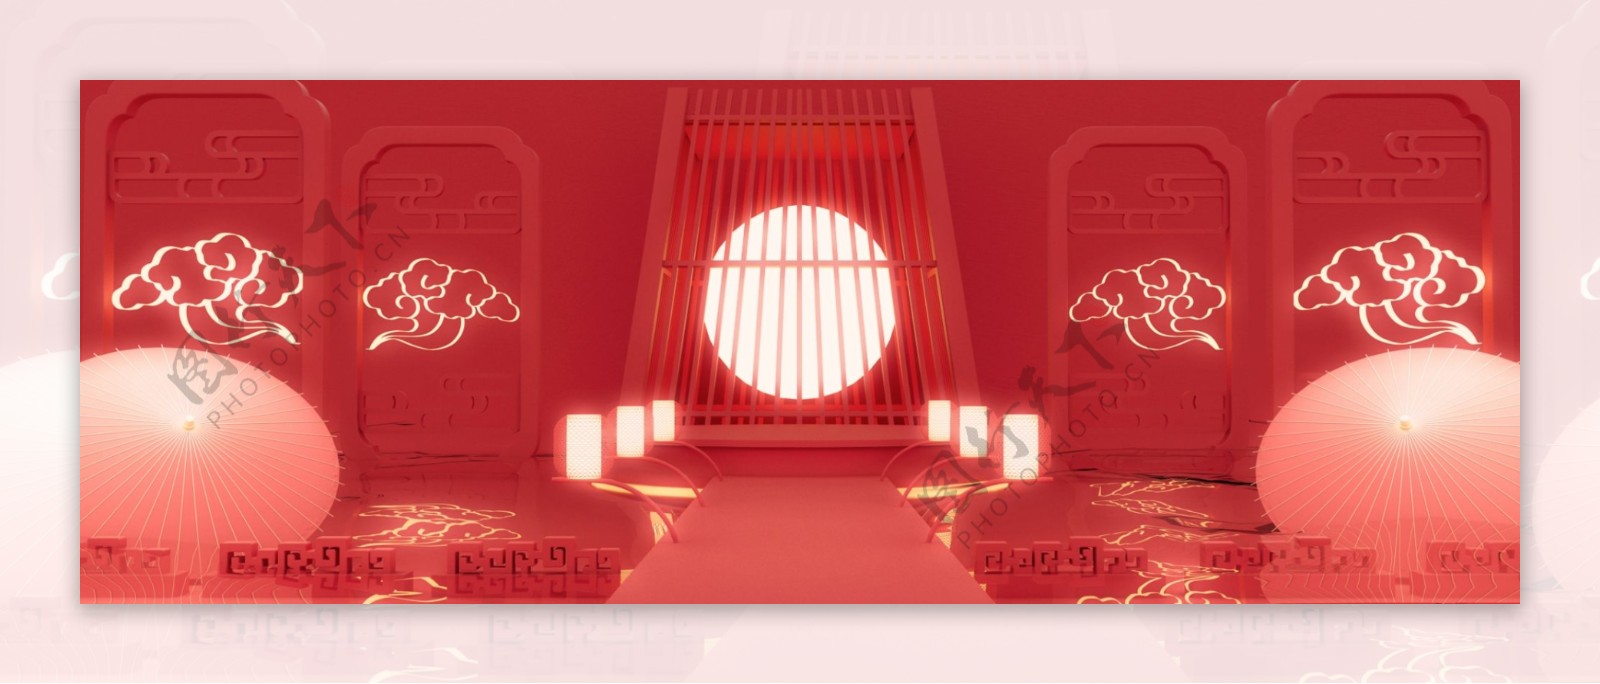 全原创红色新年水面电商风格猜灯谜舞台背景